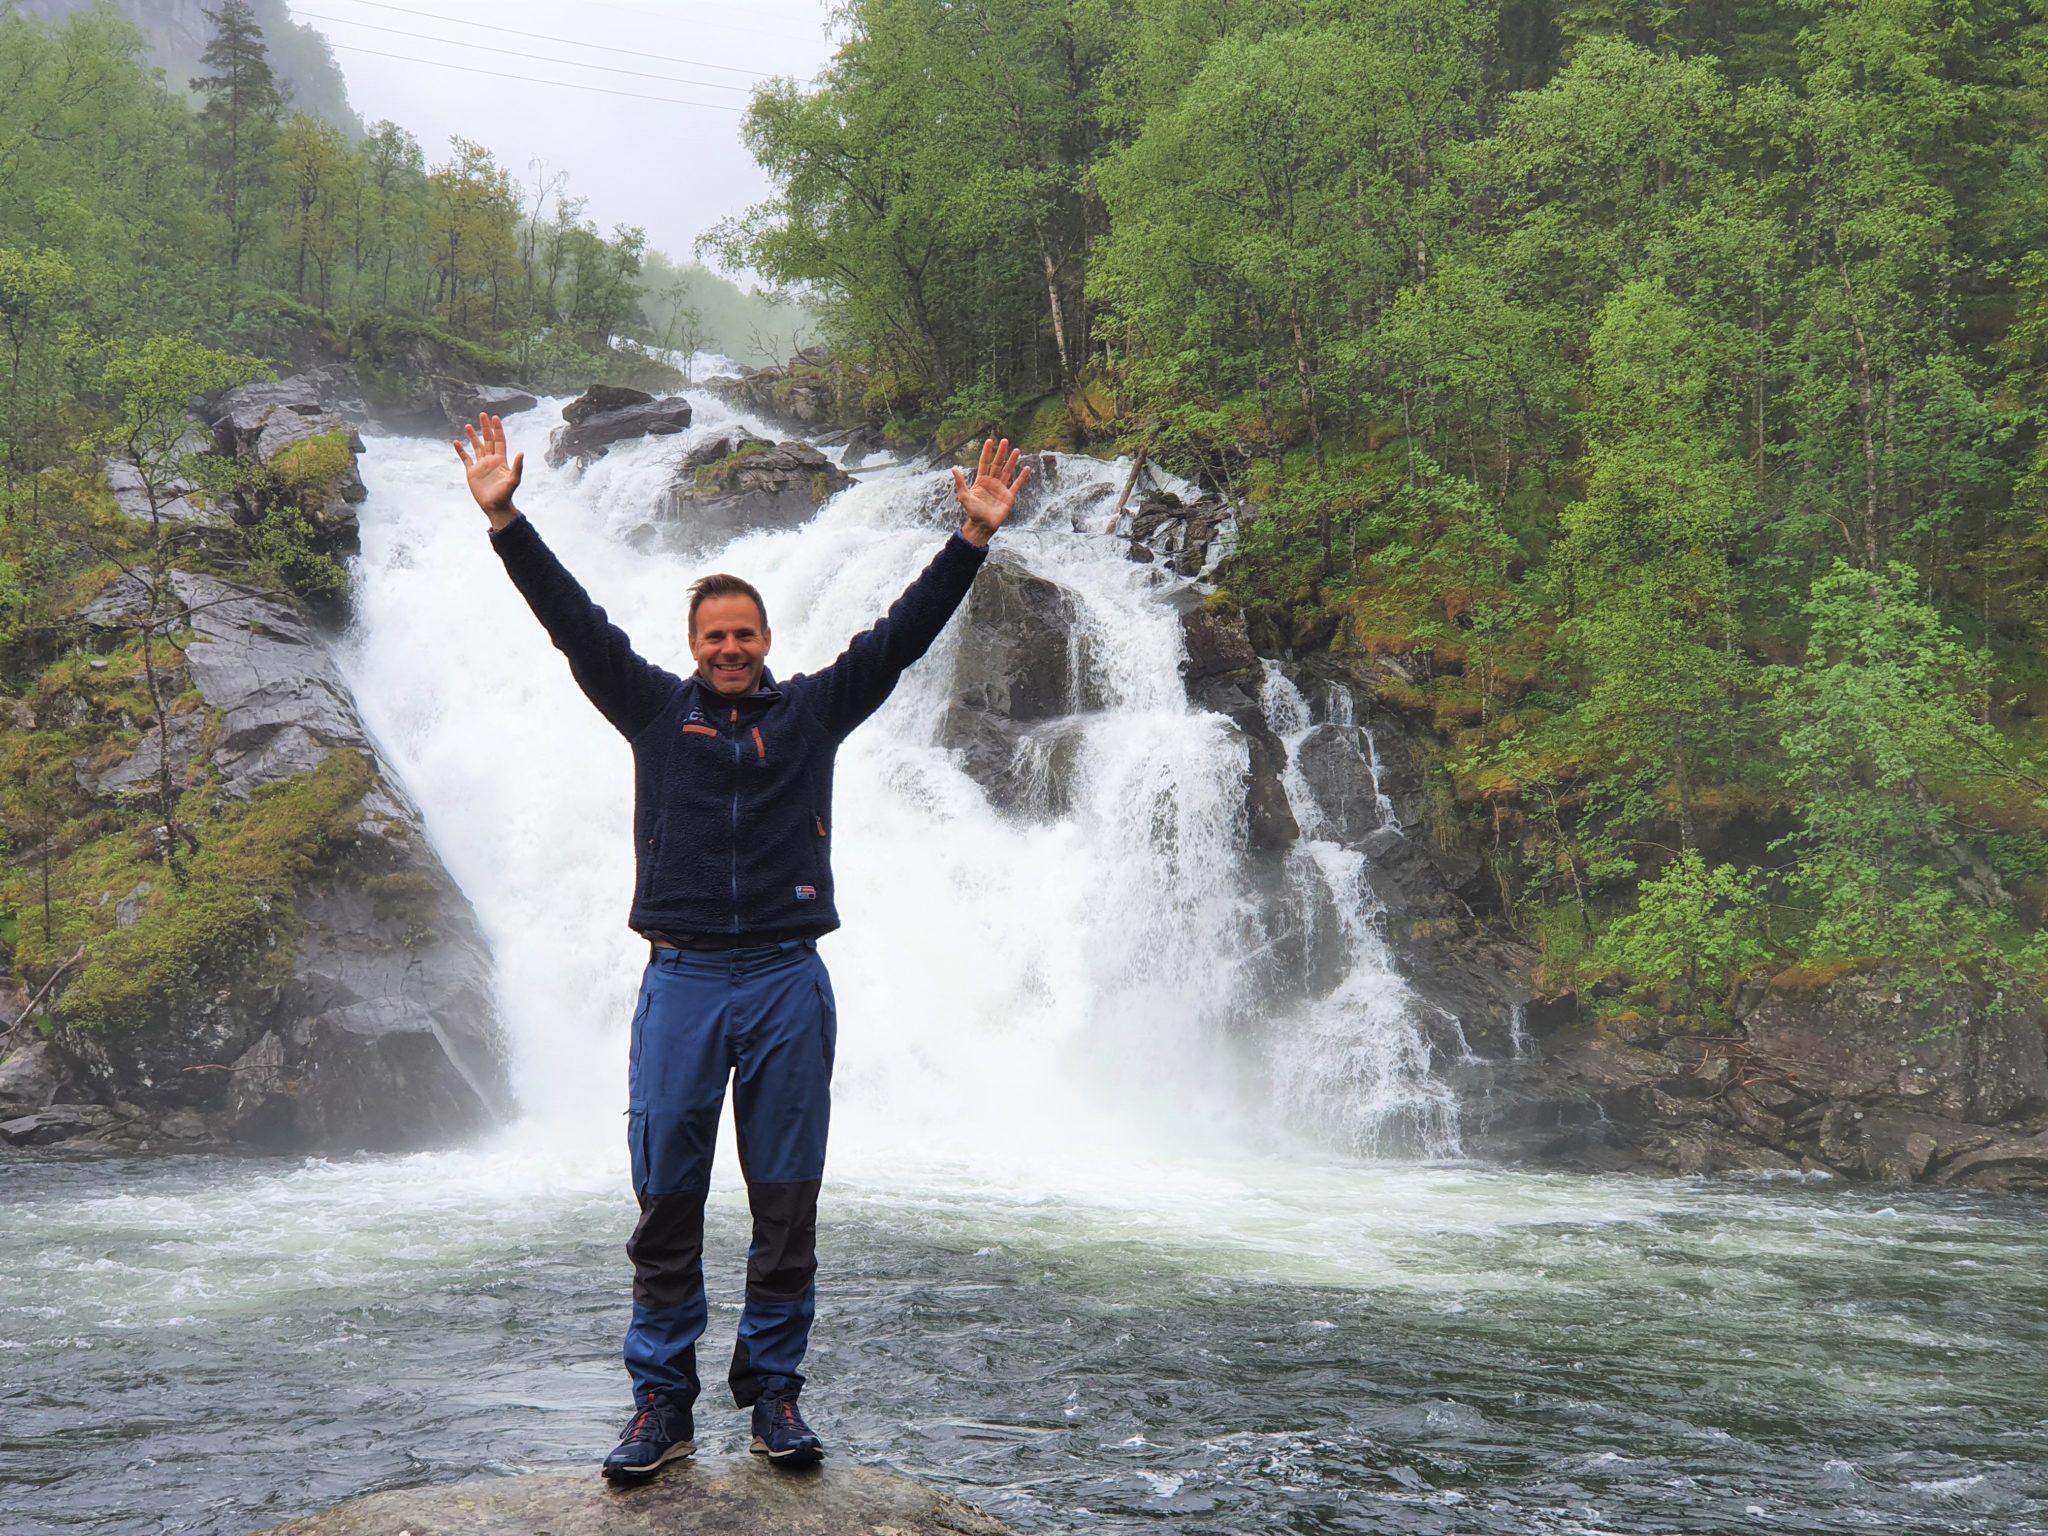 Chasing waterfalls enroute to Hardanger | Bergen365